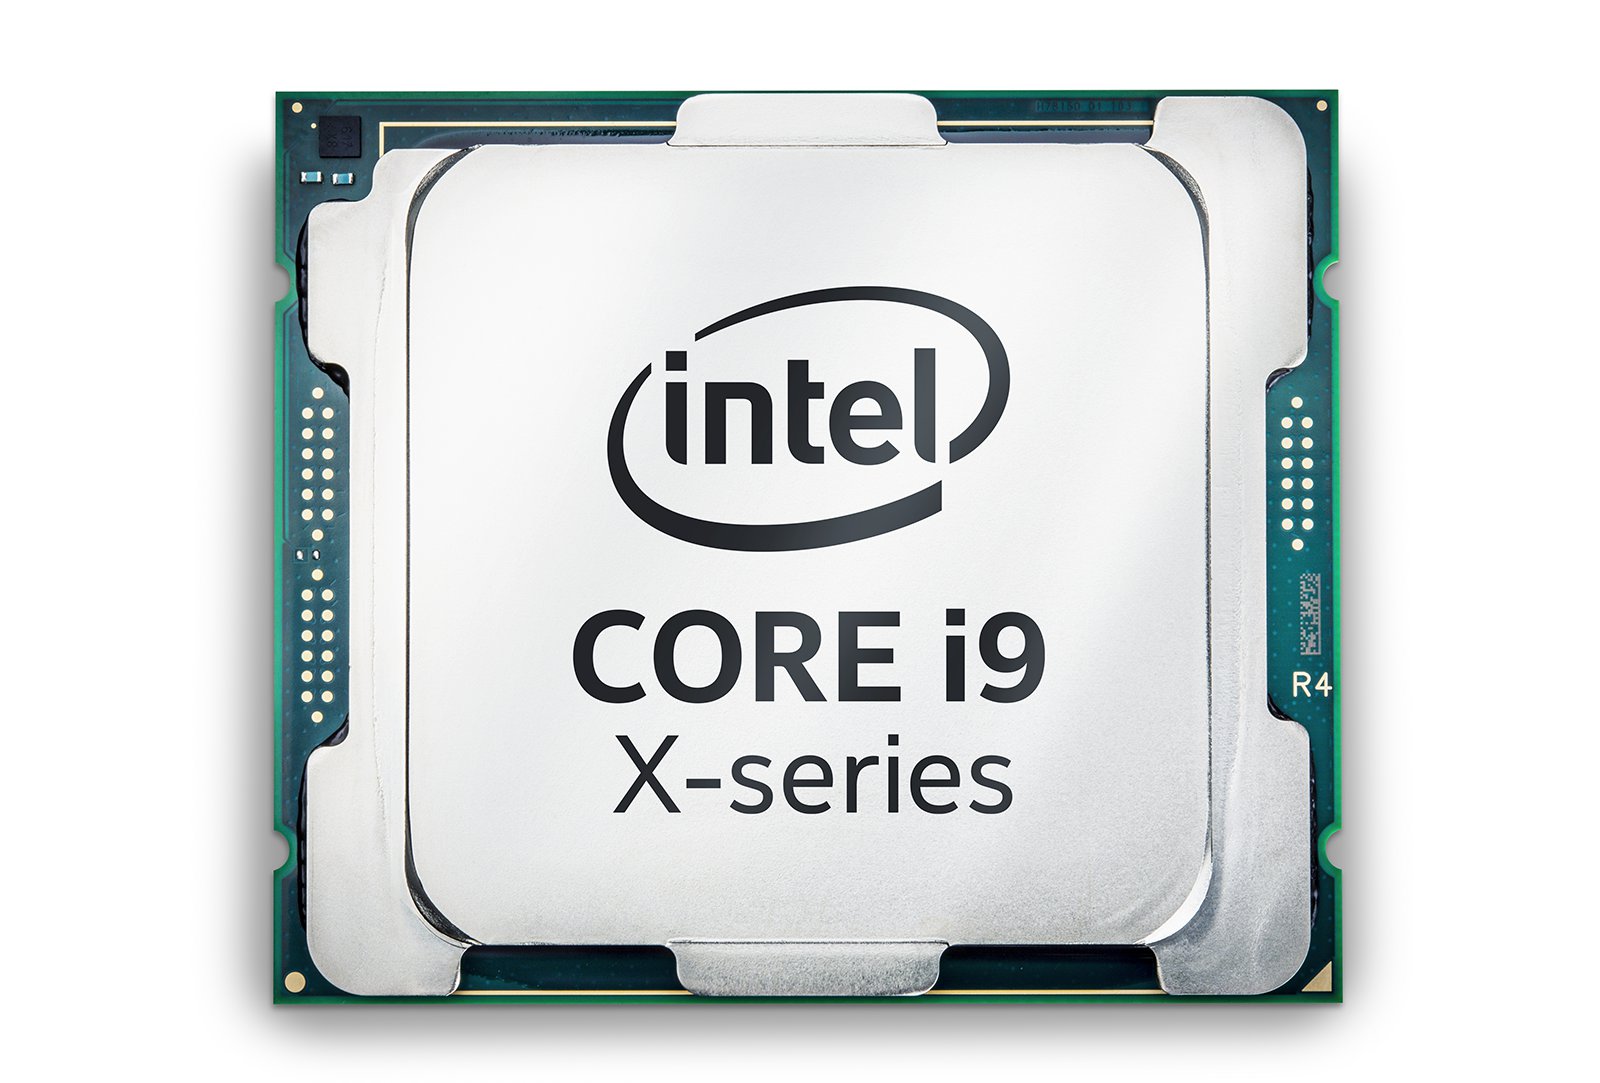 Intel presenta el monstruoso Core i9 con 18 núcleos